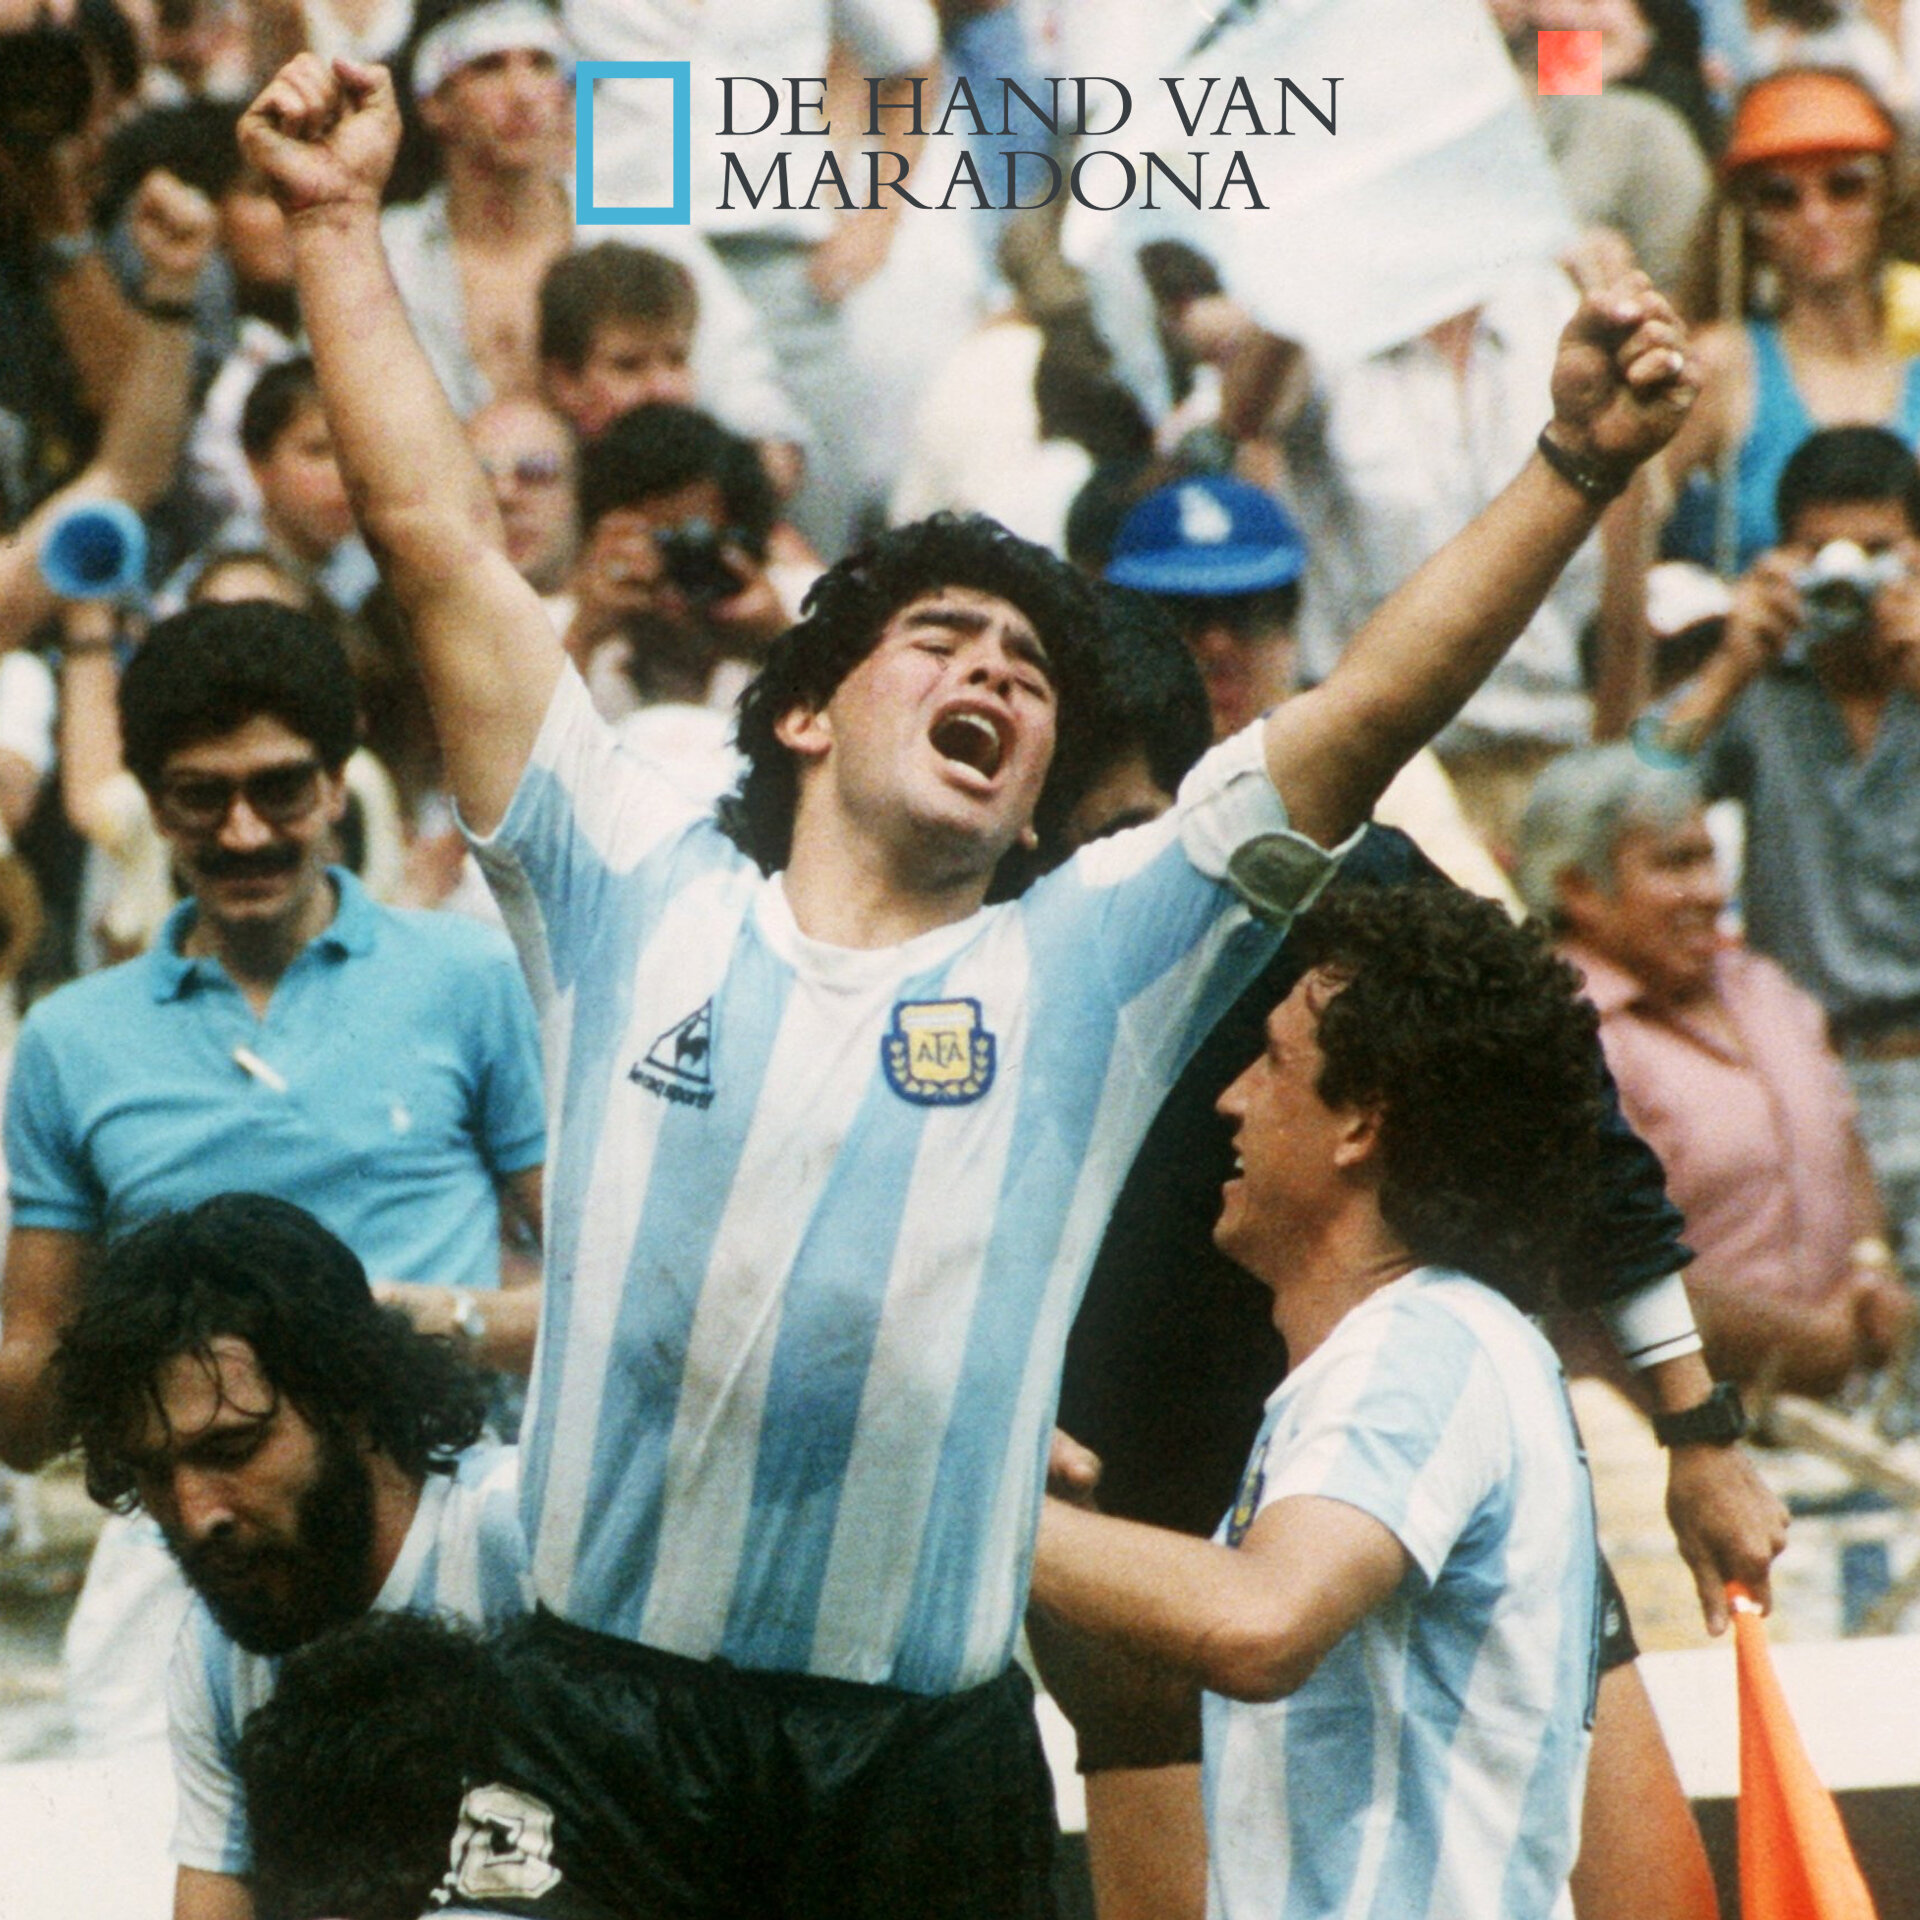 Afbeelding Hand van Maradona website.jpg